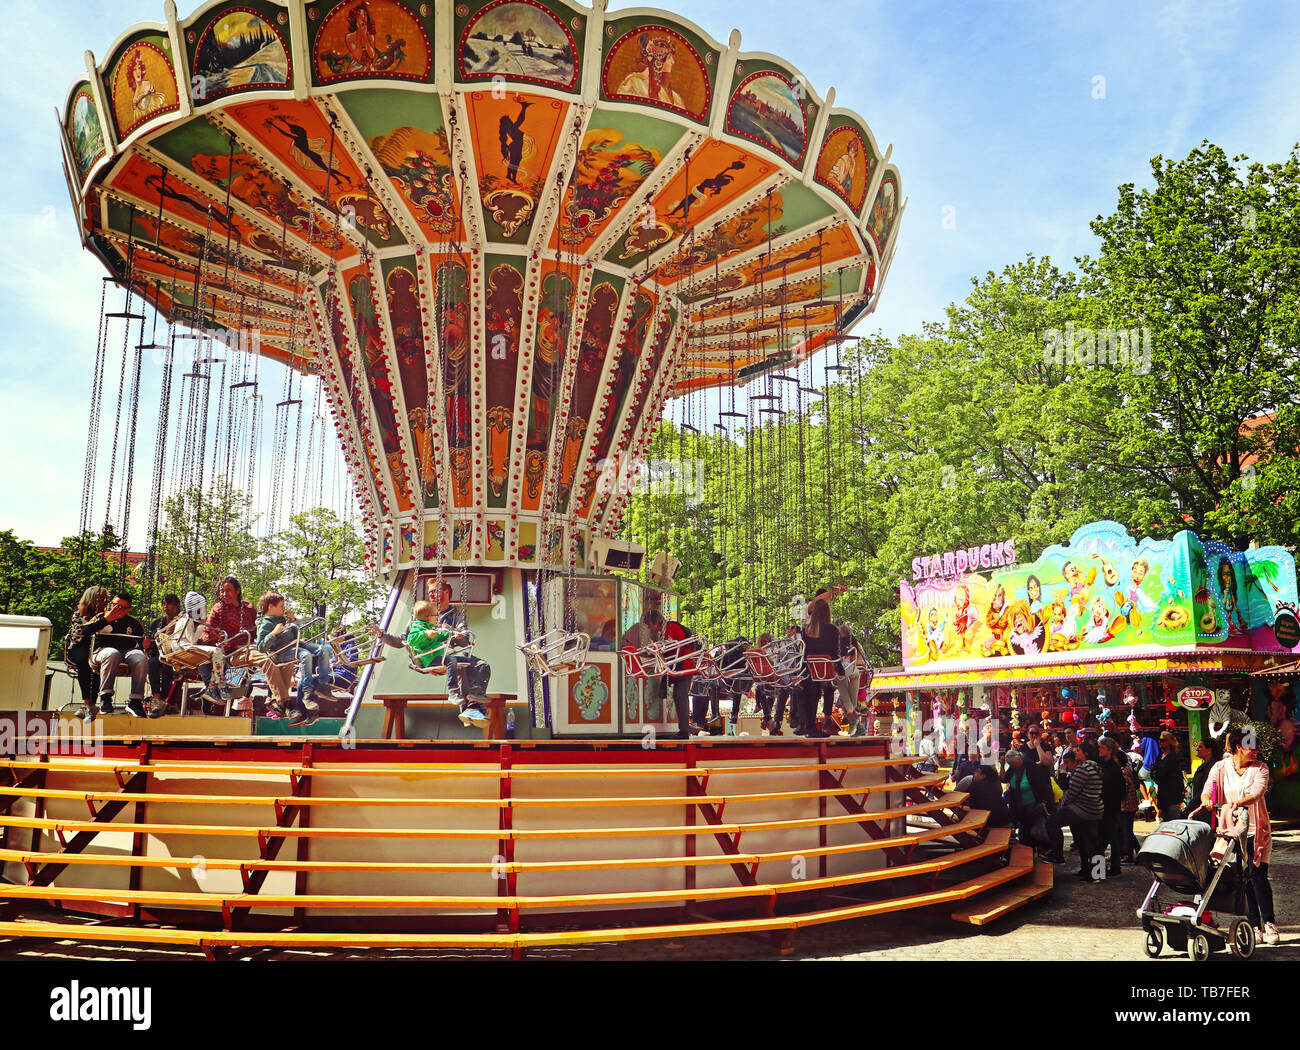 München, Deutschland - Mai 2, 2019 vintage Karussellfahrt auf der Auer Dult in München, Markt mit Unterhaltungs Attraktionen Stockfoto